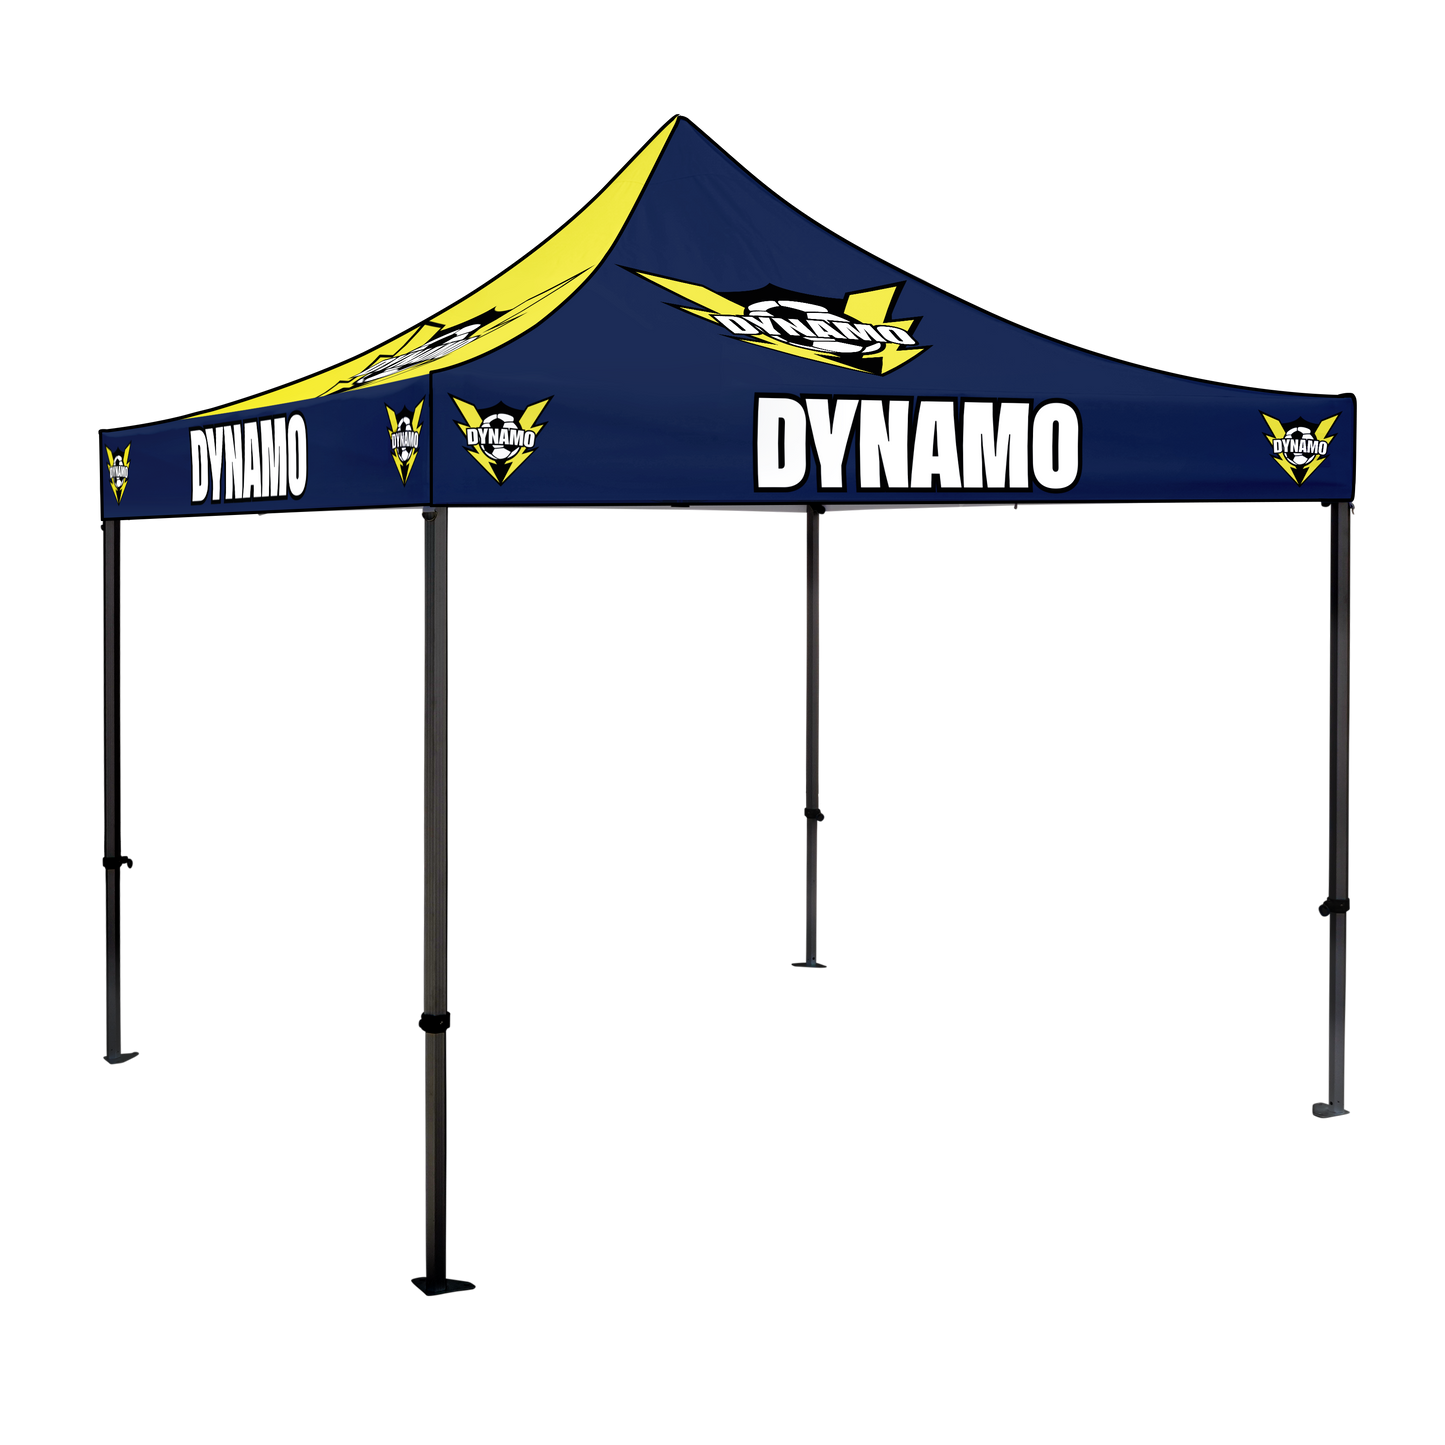 Dynamo 10x10 Canopy Kit